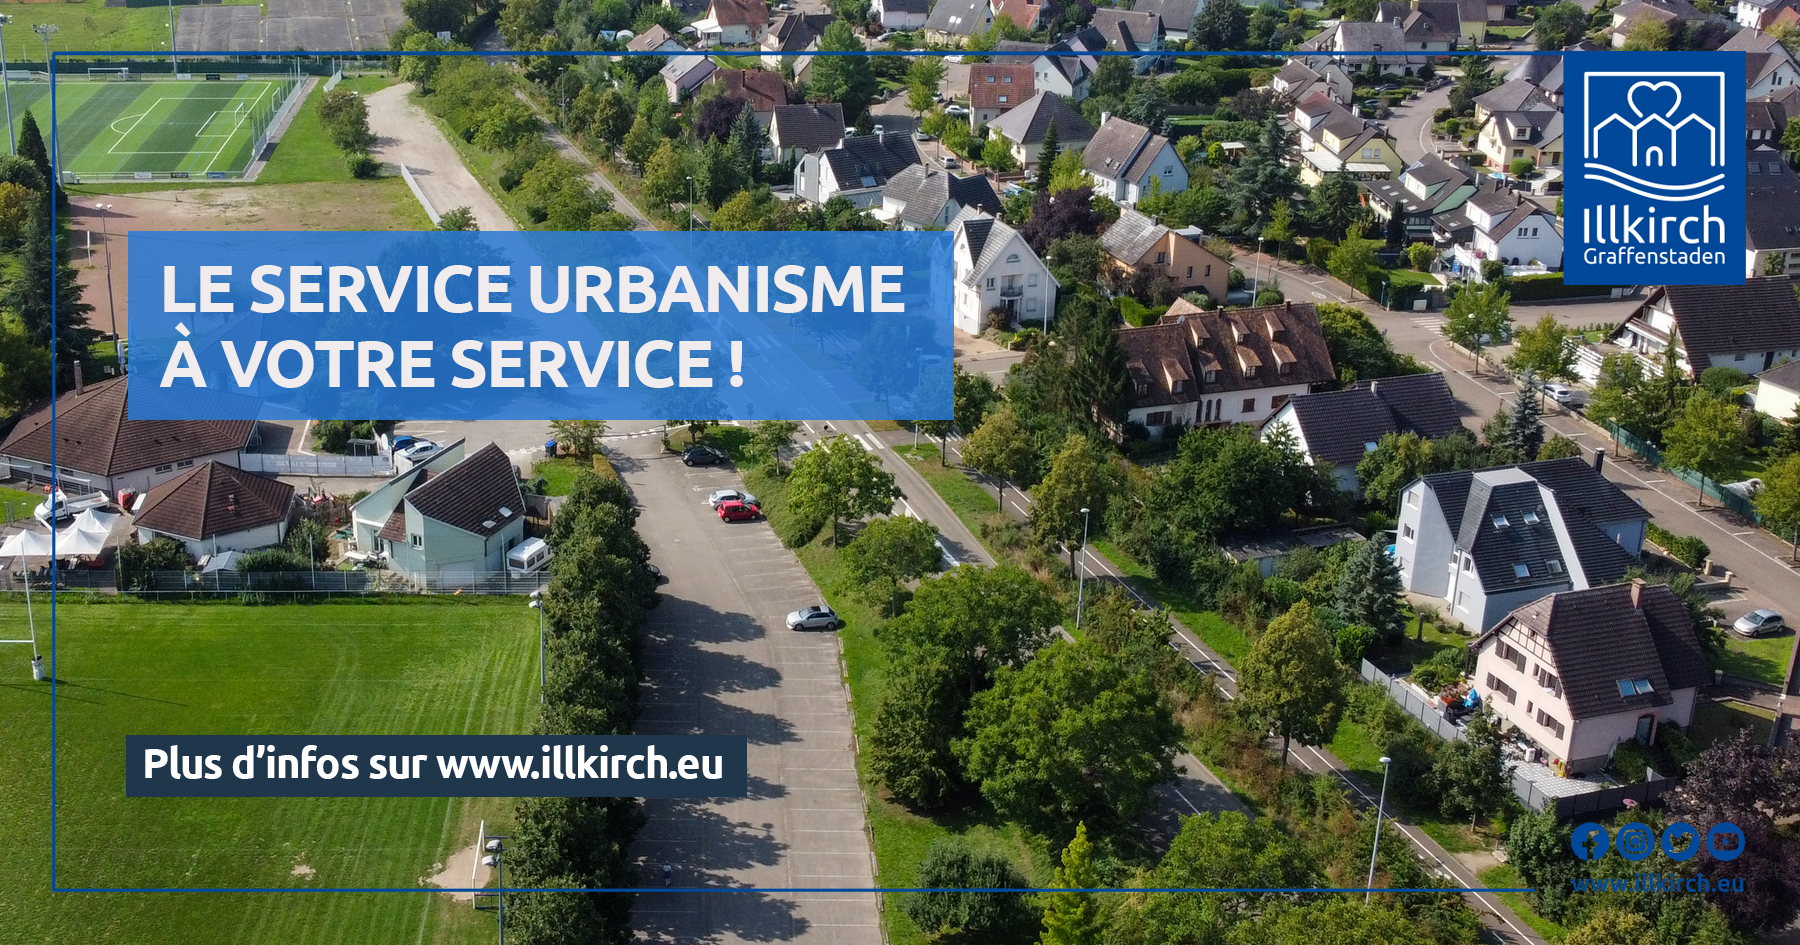 Le Service Urbanisme à votre service !